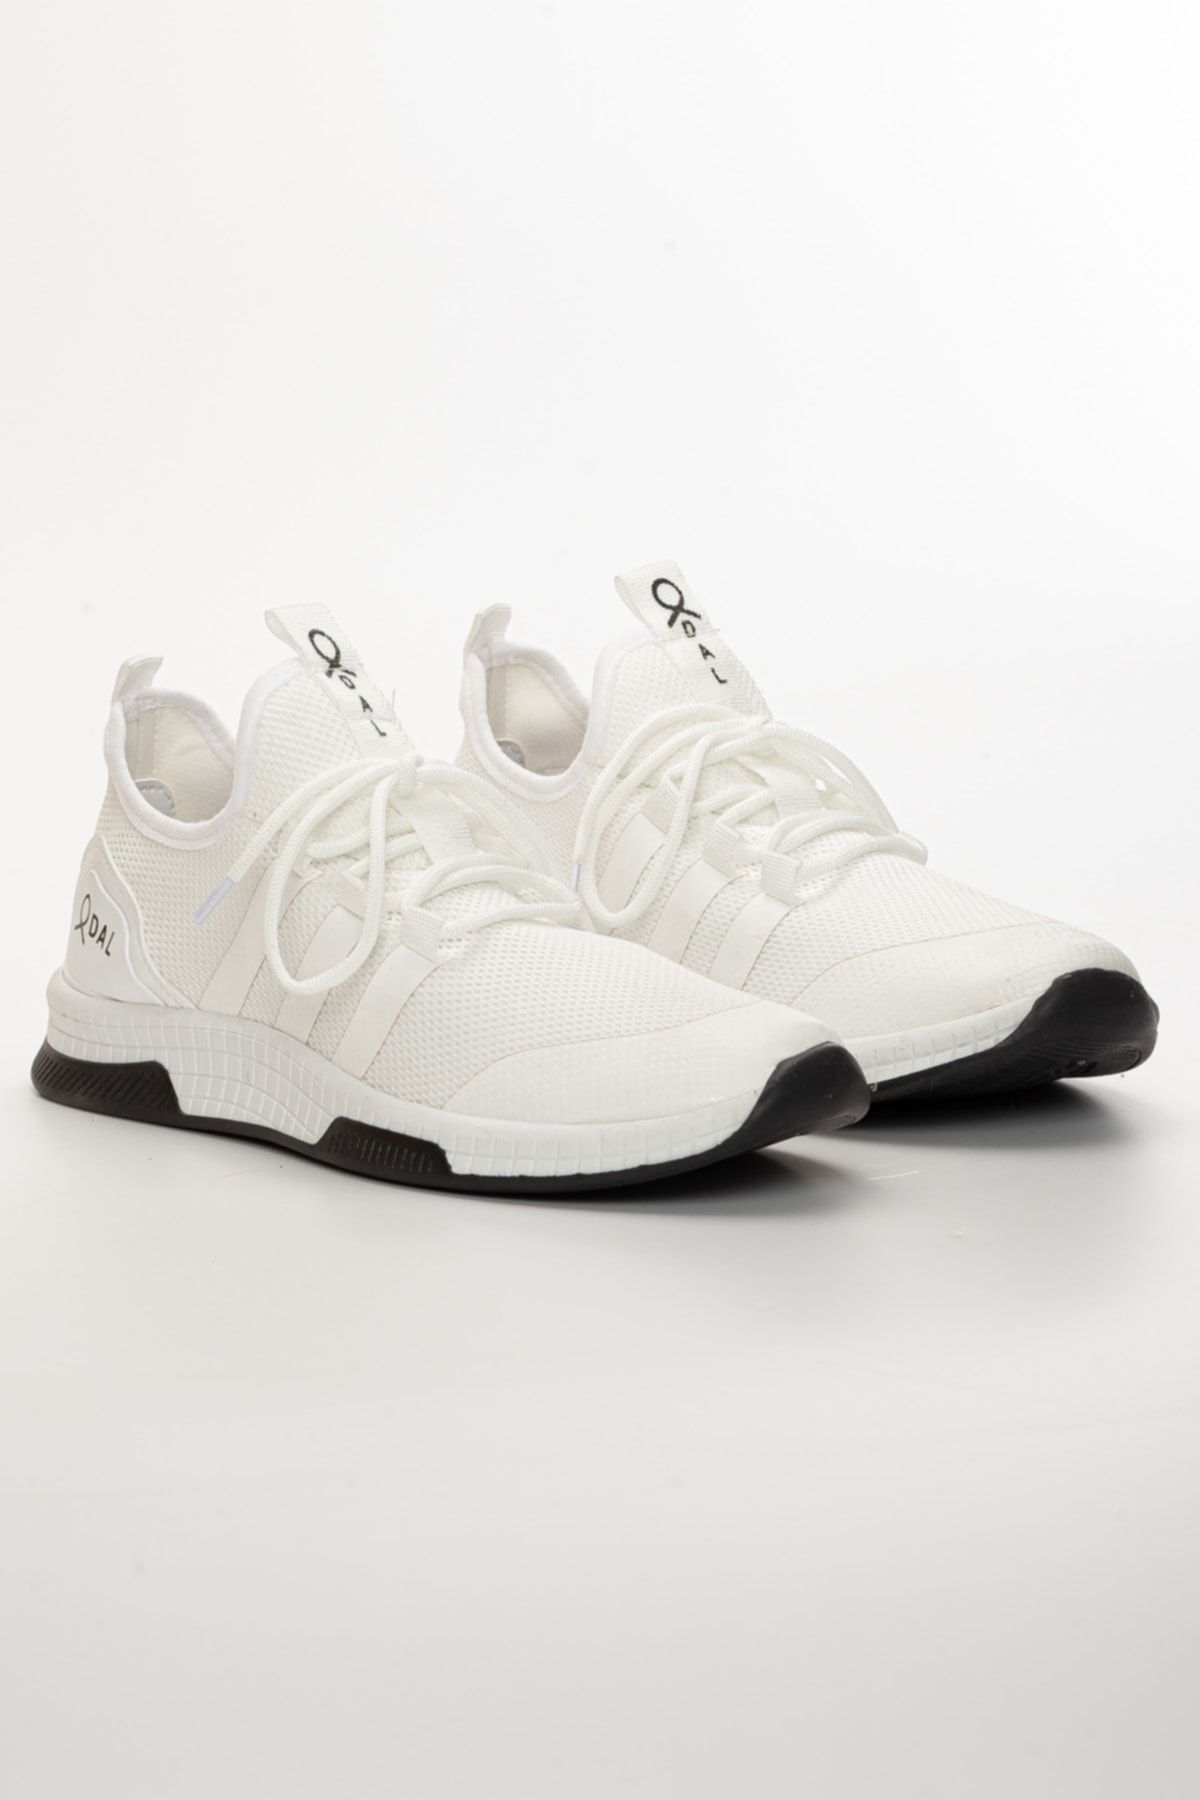 Odal Shoes Unisex Beyaz Sneaker Tgrltkglxty35